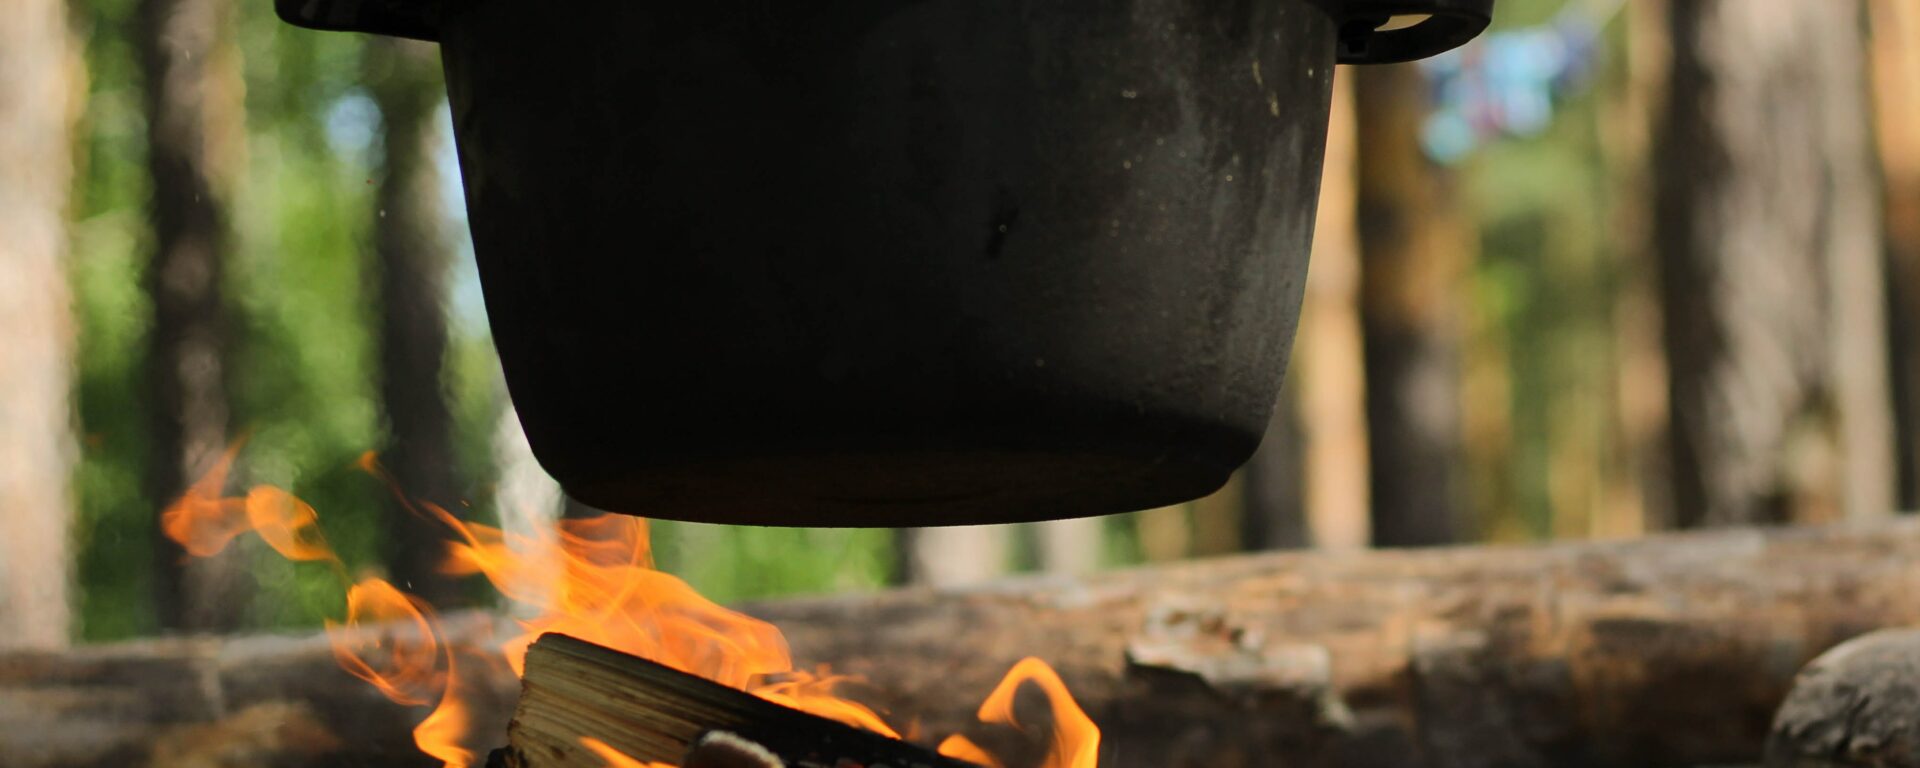 Холандска фурна, готвене над огън